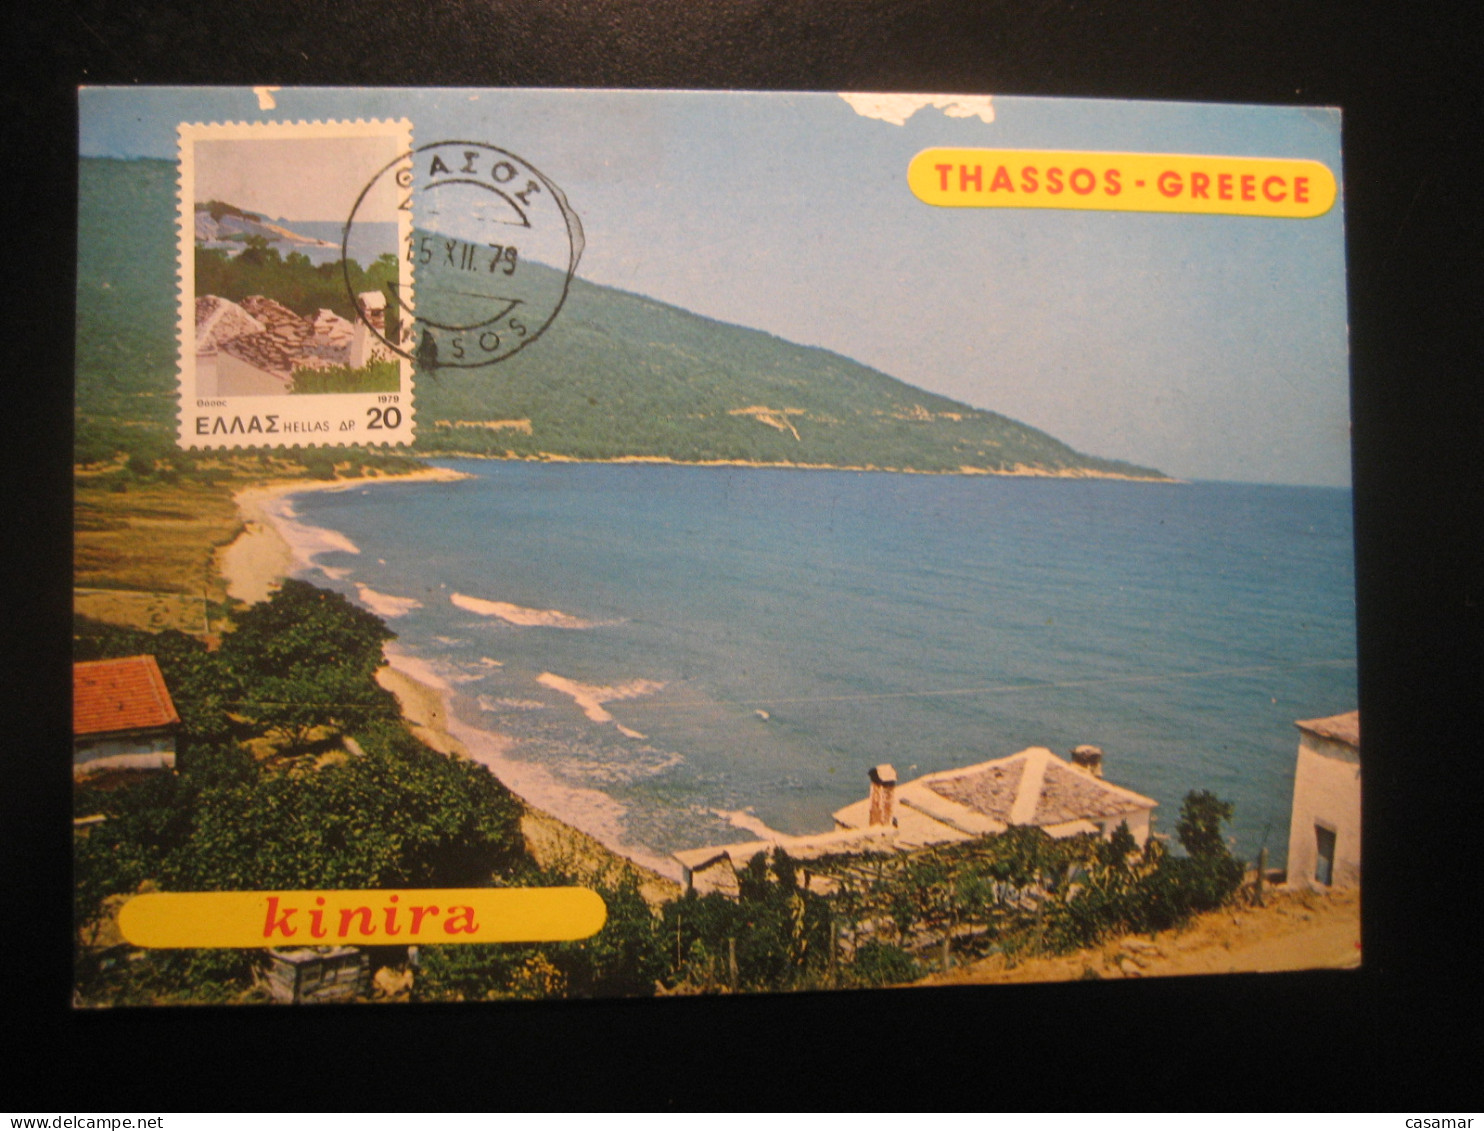 THASSOS Island 1979 Kinira Maxi Maximum Card GREECE - Briefe U. Dokumente